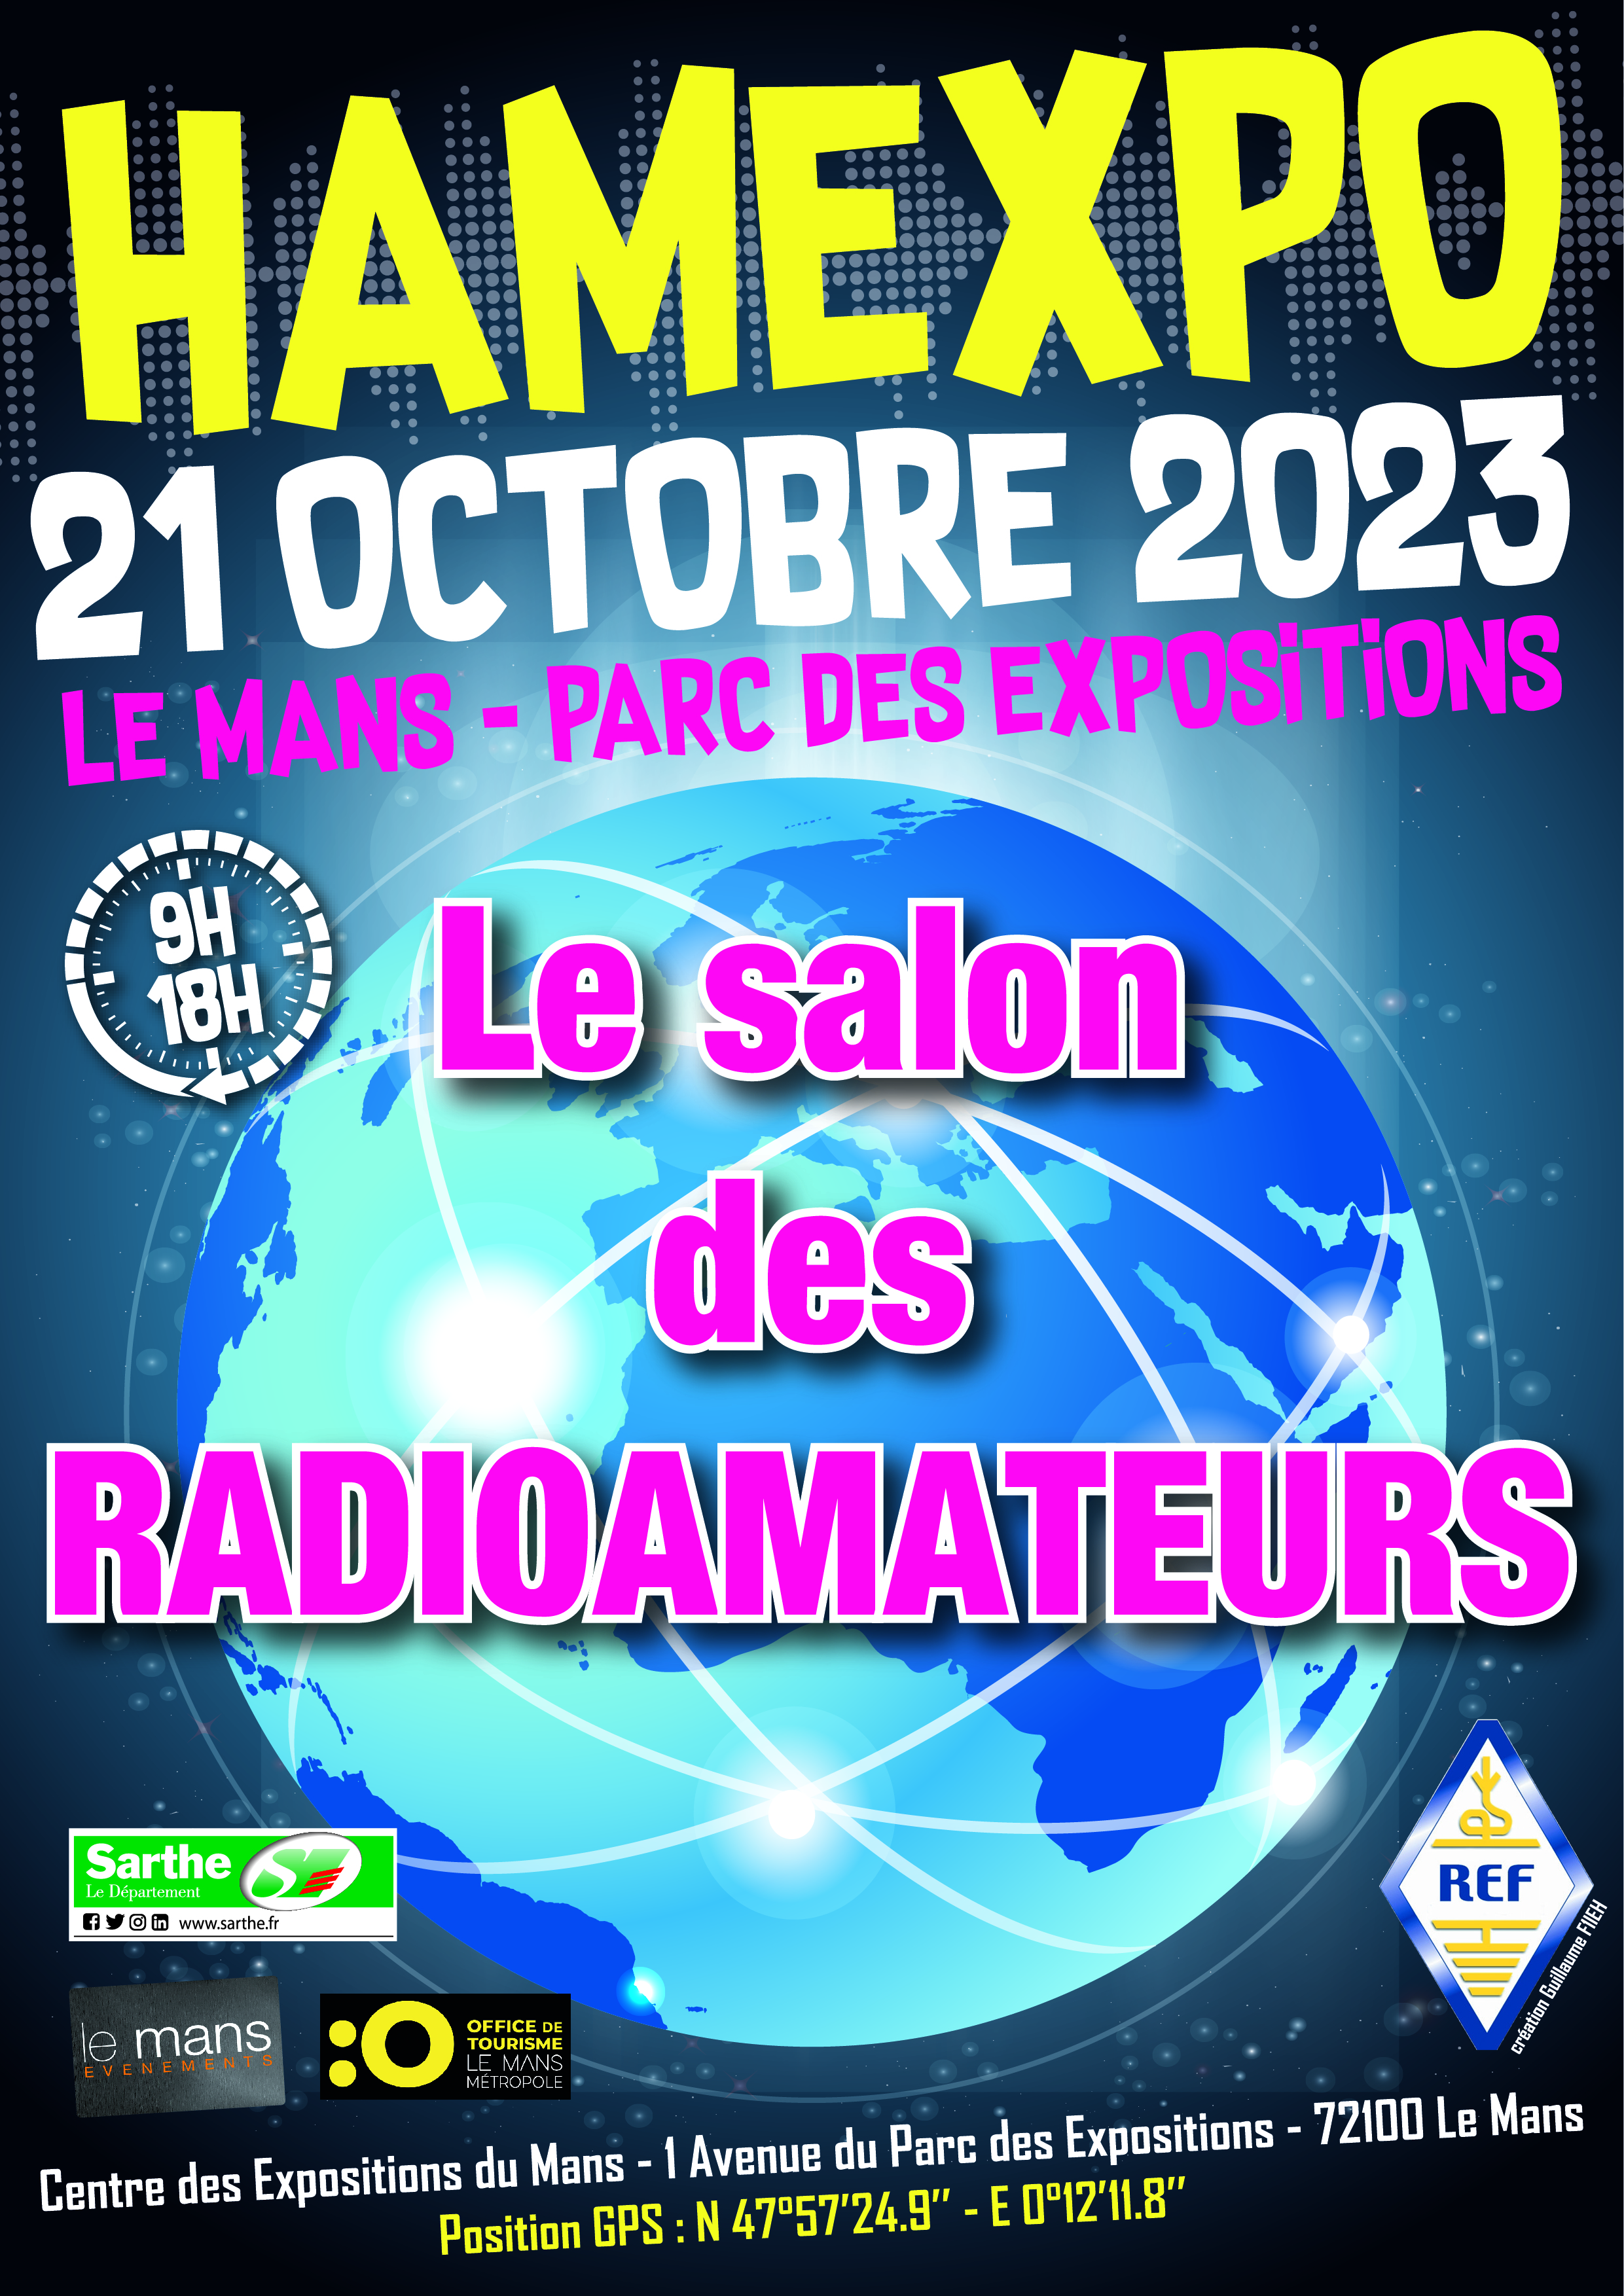 HAMEXPO 21 OCTOBRE 2023 LE MANS - PARC DES EXPOSITIONS Le salon des RADIOAMATEURS